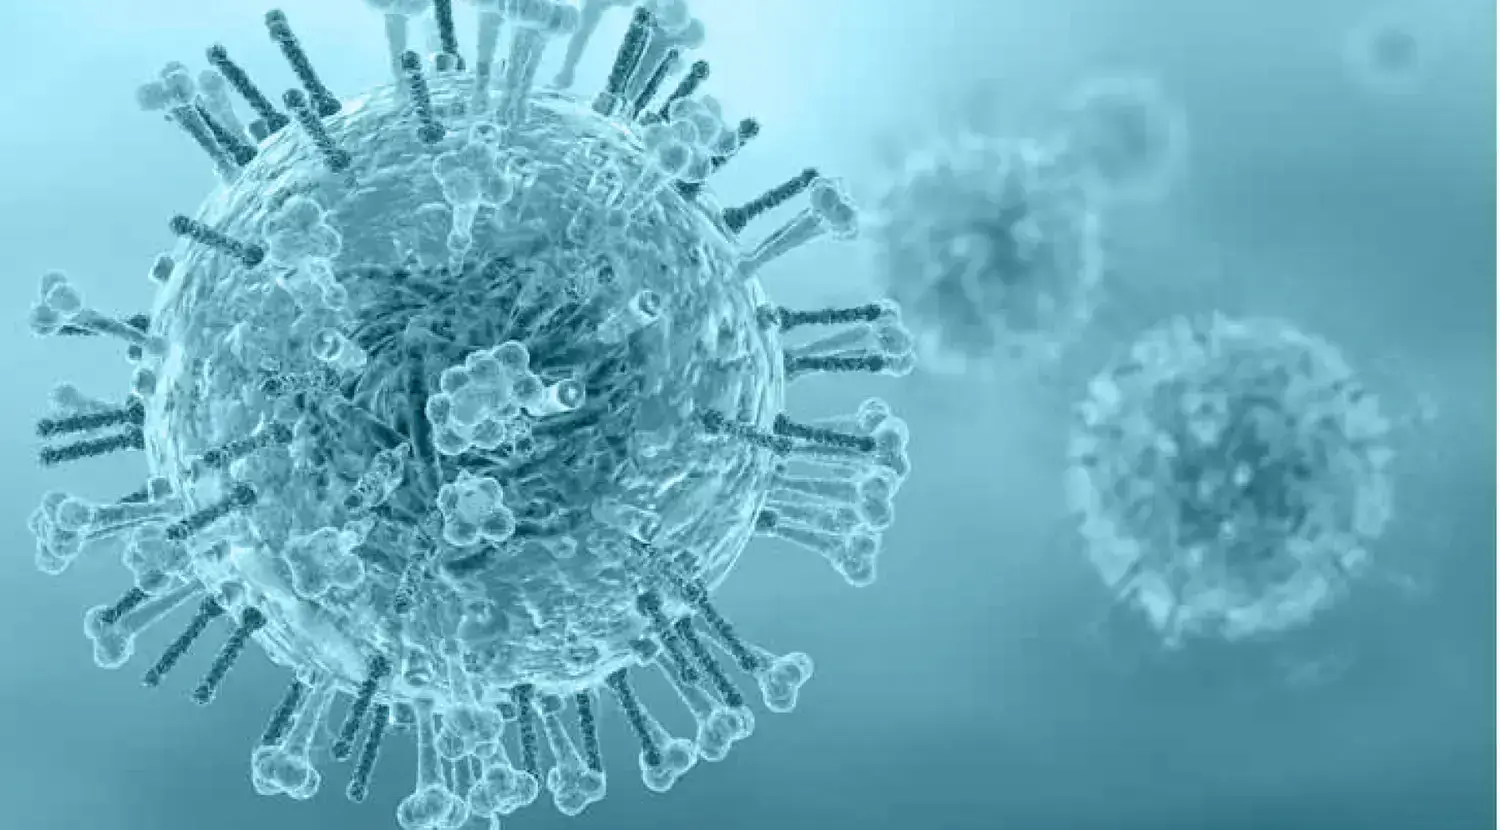 عامل بیماری آنفولانزا . عامل سرماخوردگی . تفاوت سرماخوردگی با آنفولانزا در عامل بیماری